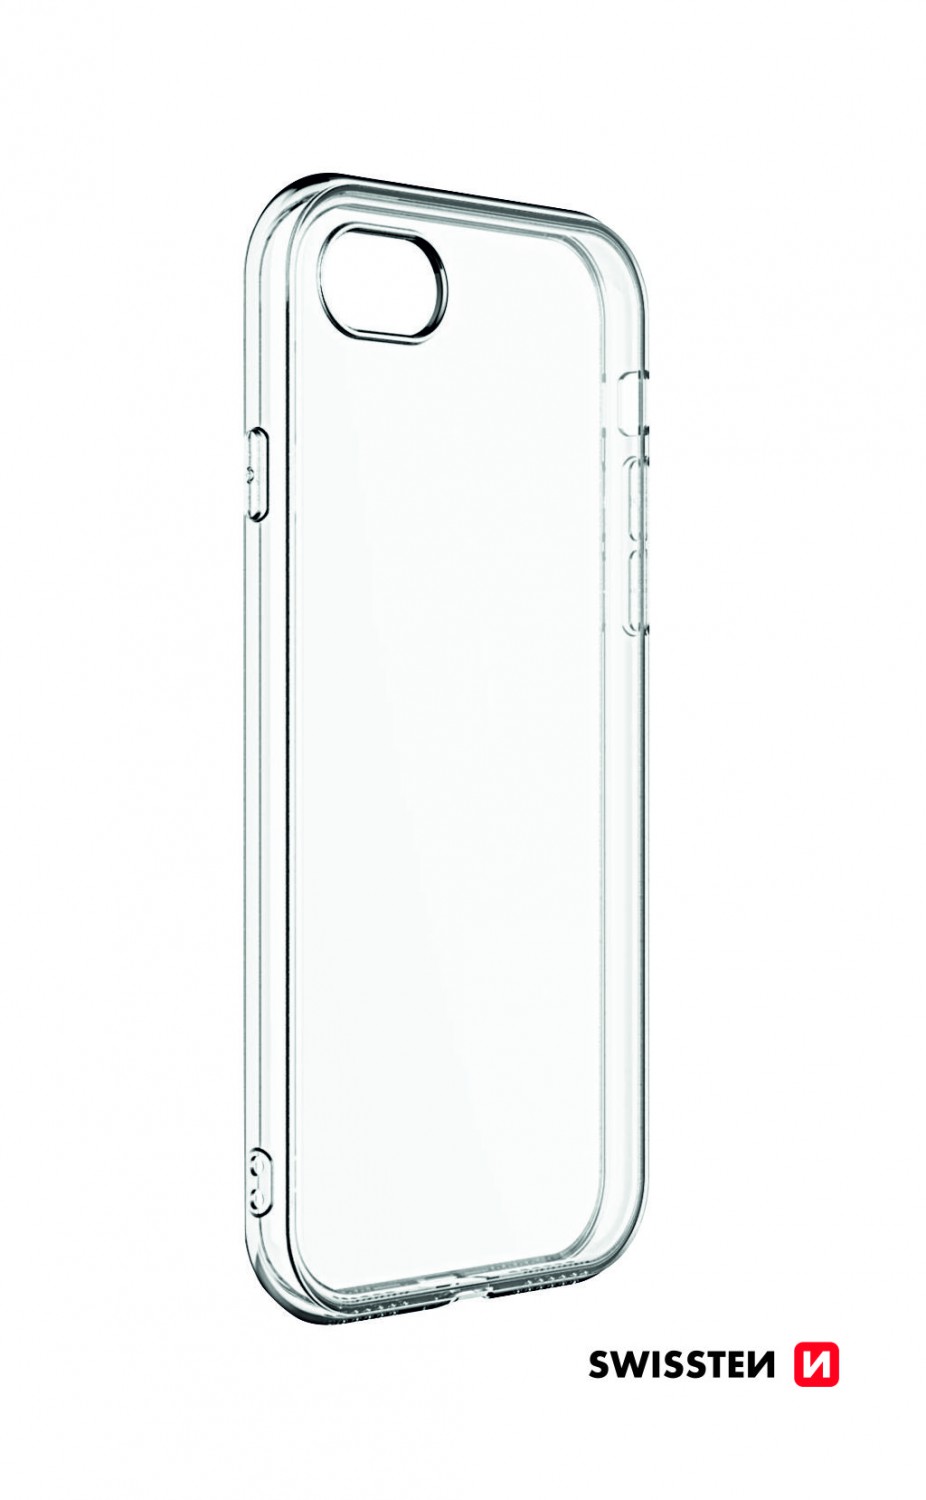 Silikonové pouzdro Swissten Clear Jelly pro Apple iPhone 13, transparentní 